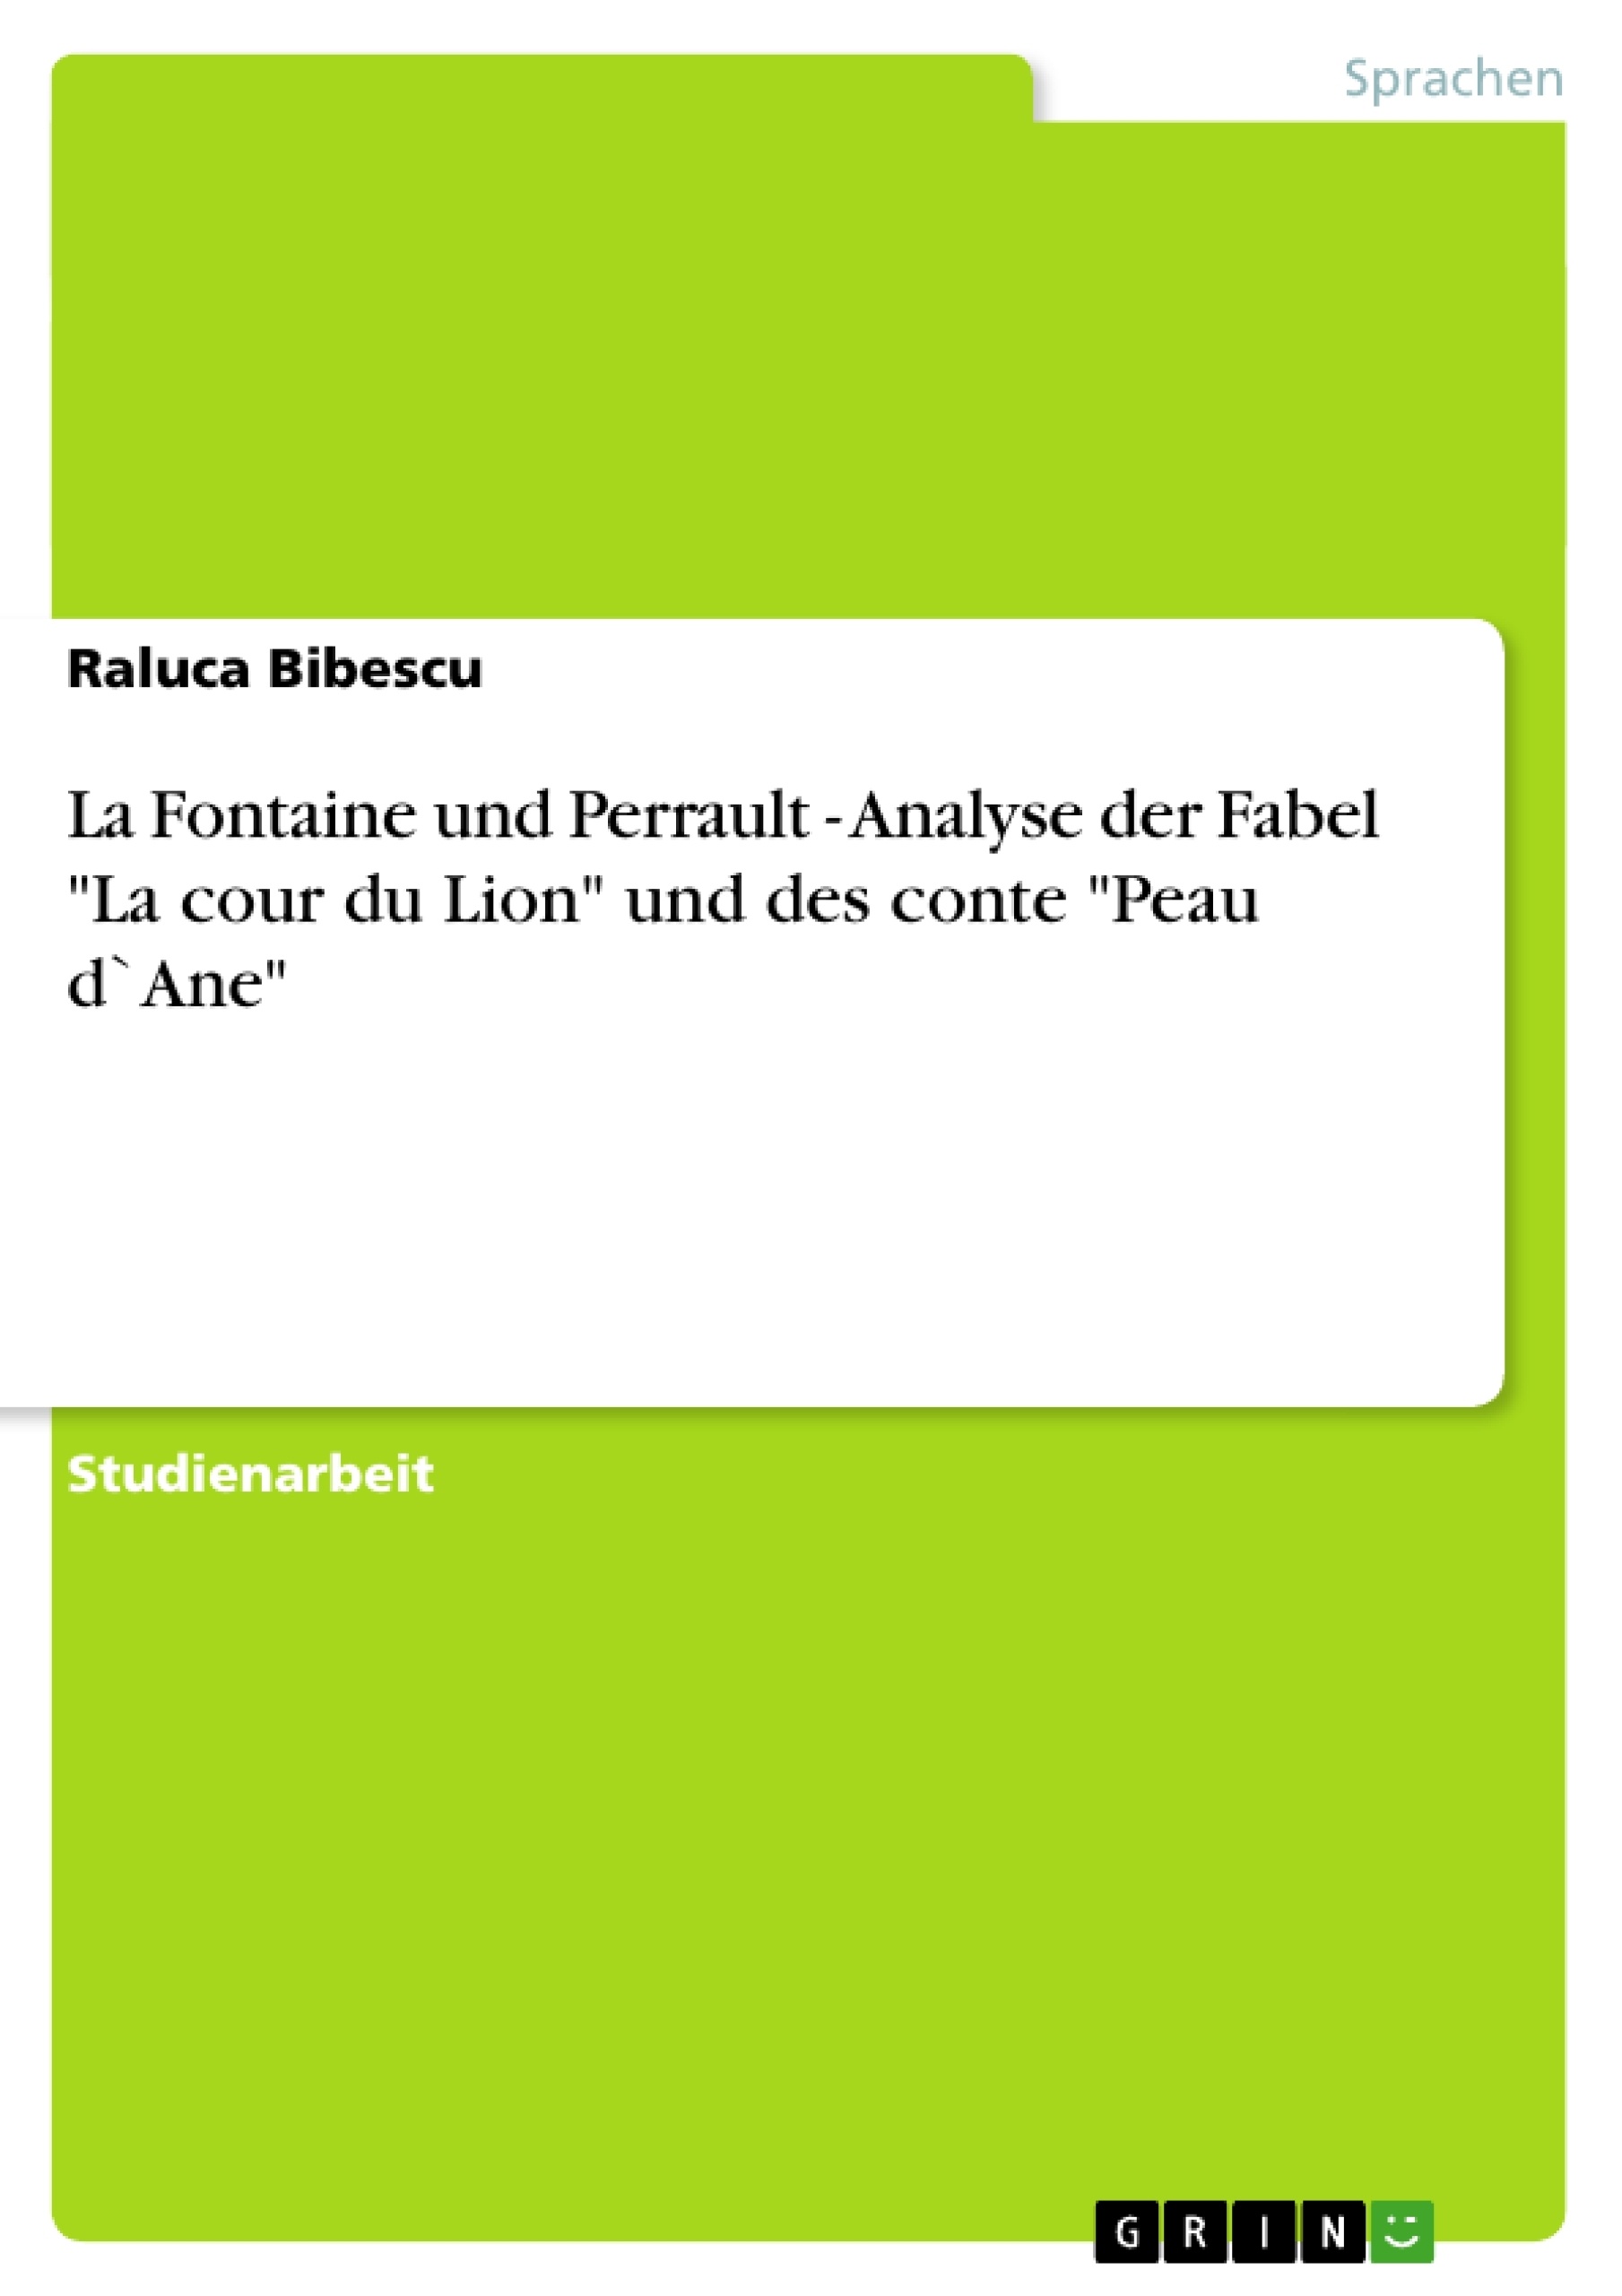 Title: La Fontaine und Perrault - Analyse der Fabel "La cour du Lion" und des conte "Peau d`Ane"